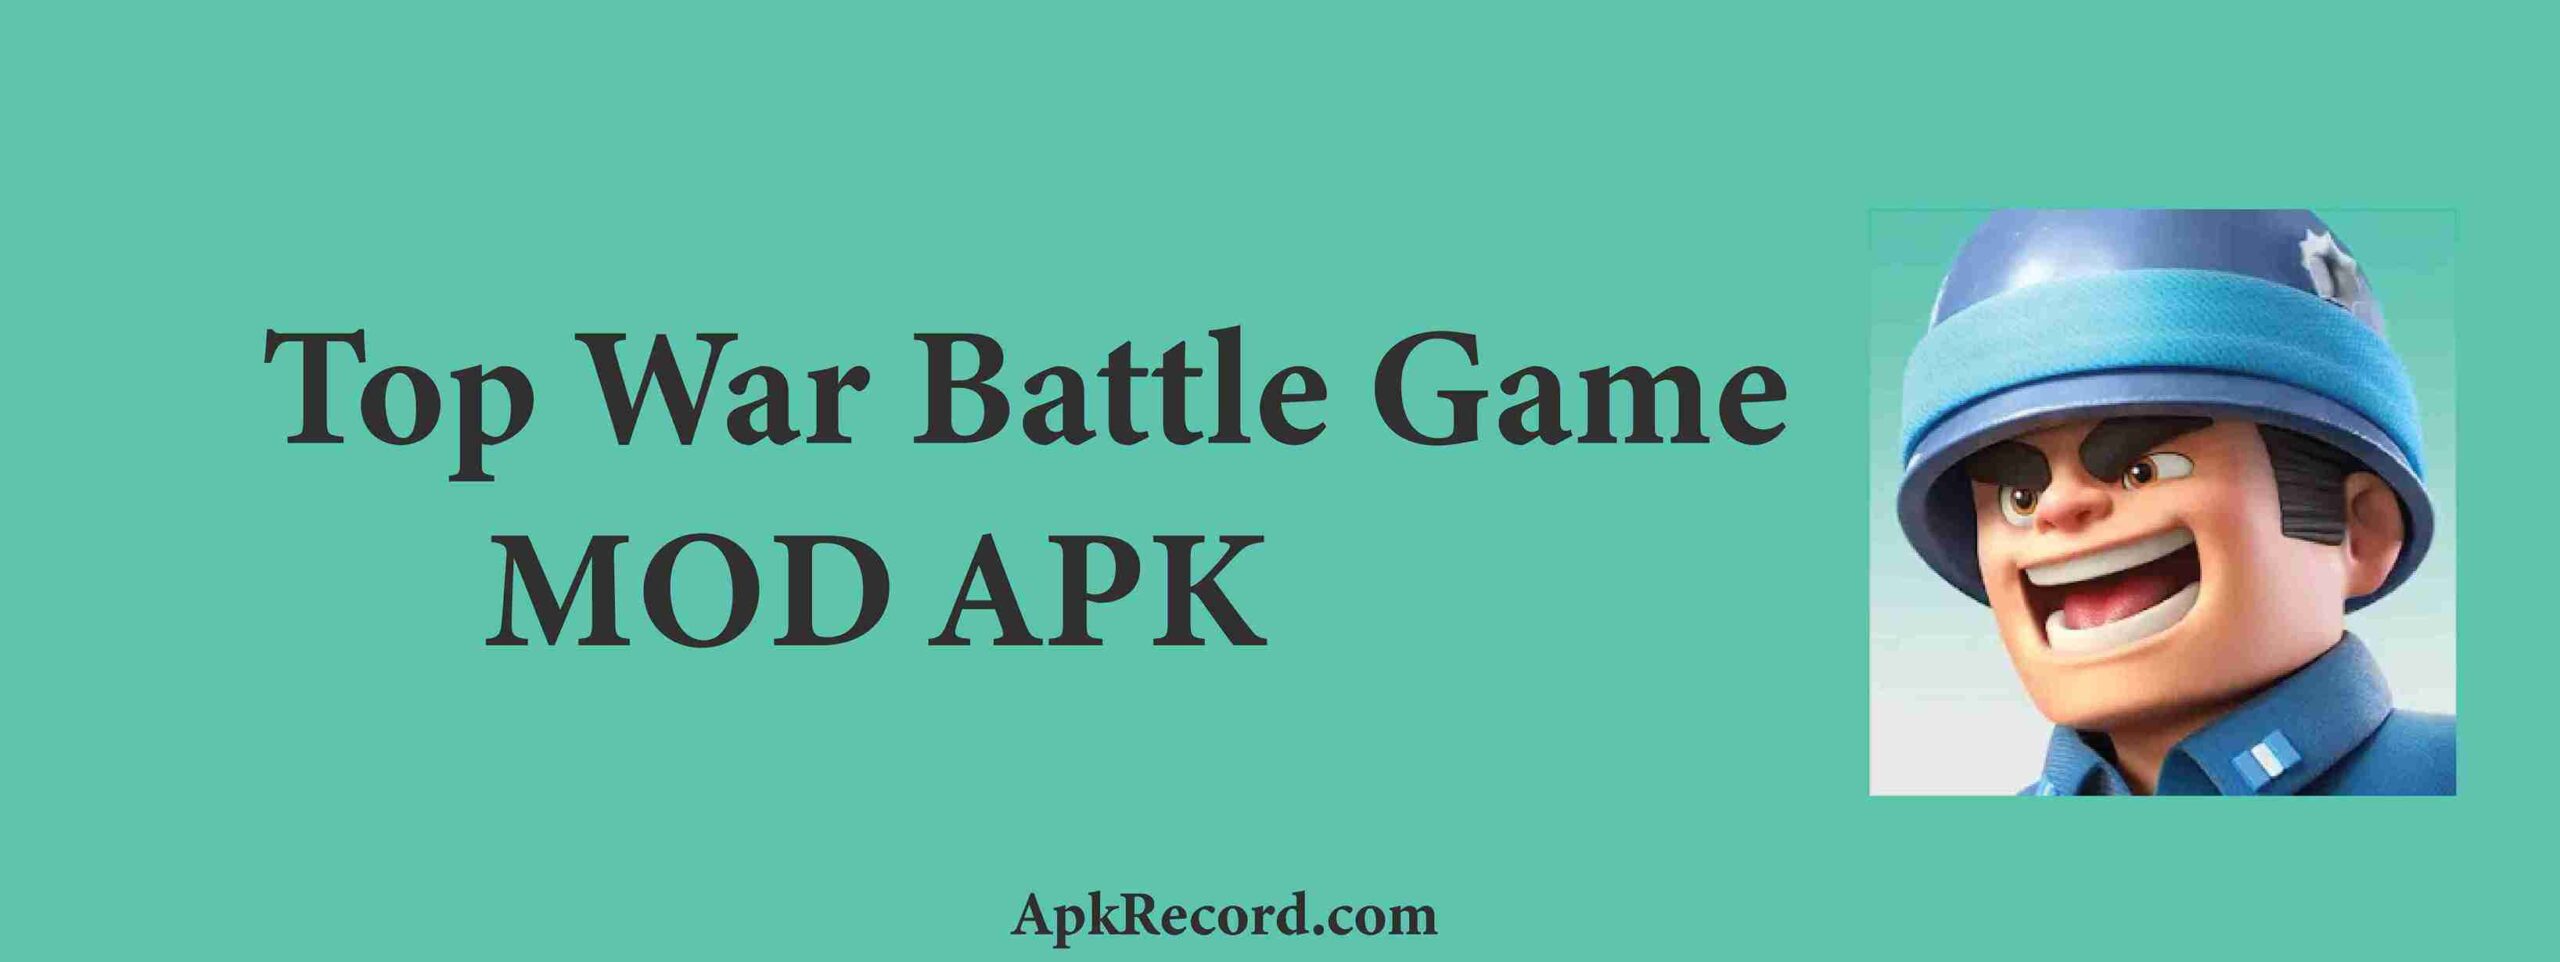 Top War Battle Game MOD APK V1.434.0